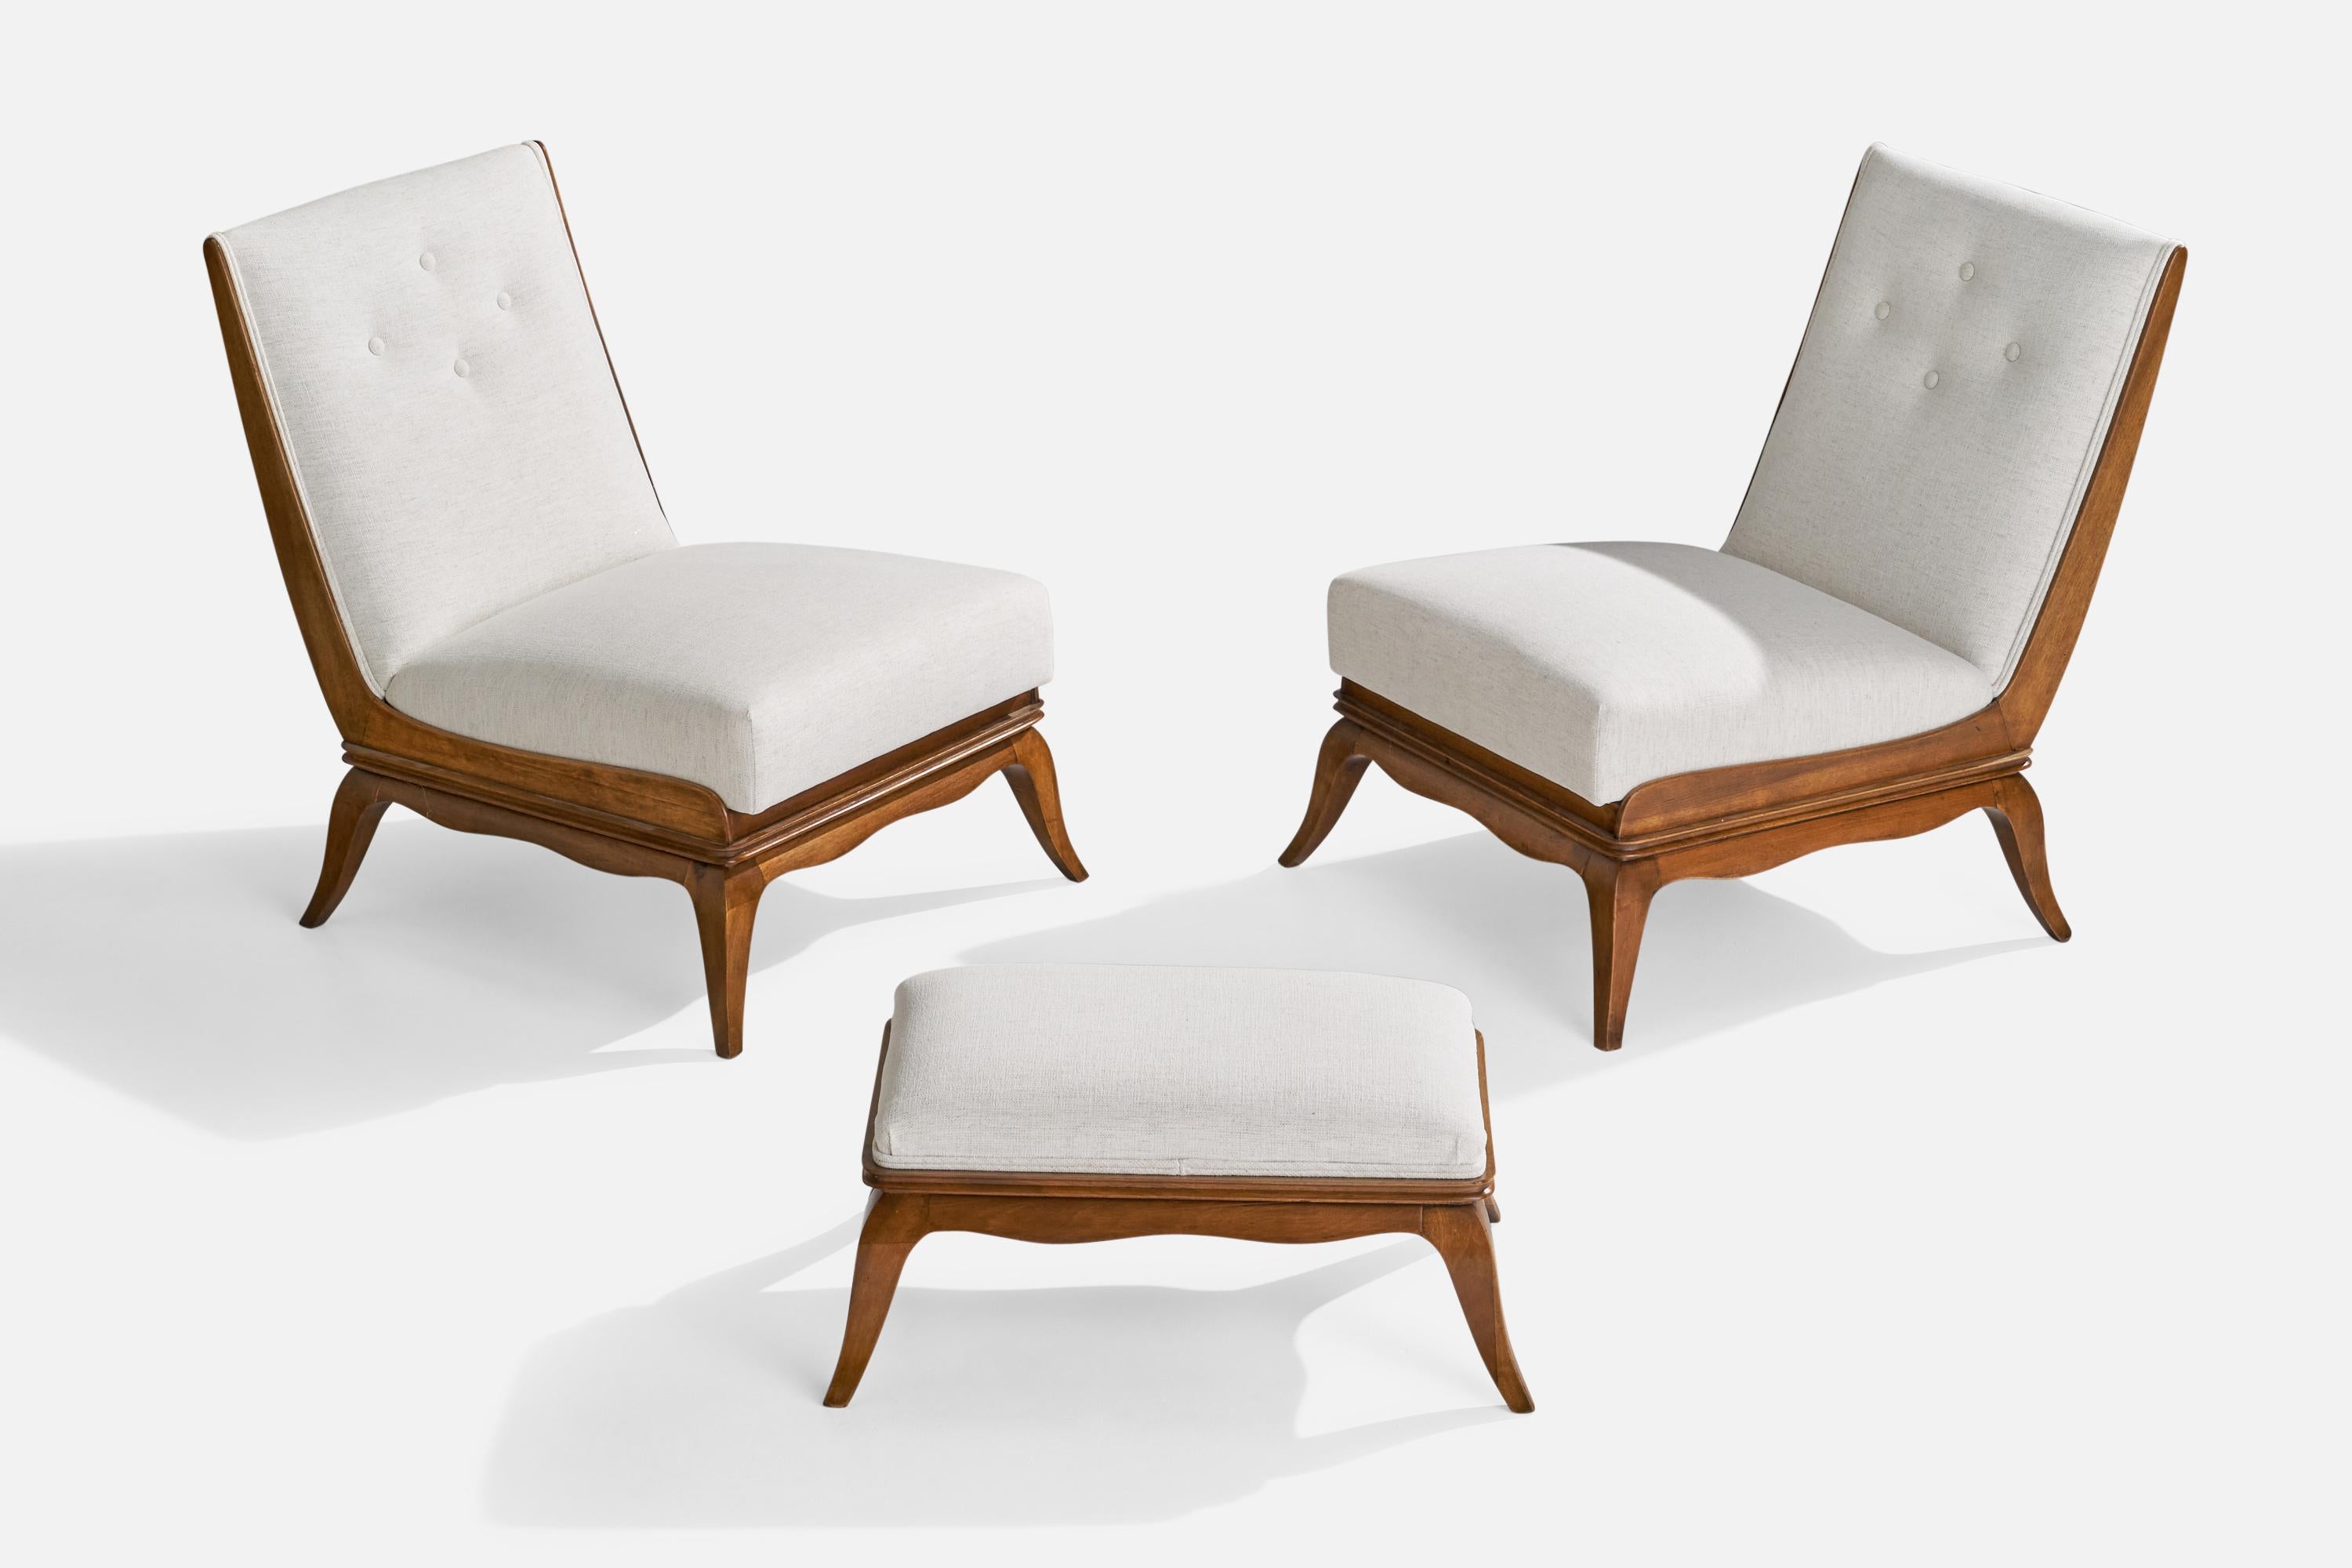 Ein Paar Sessel aus Walnussholz und weißem Stoff mit Ottomane, entworfen und hergestellt in Italien um 1940. 

Sitzhöhe 15